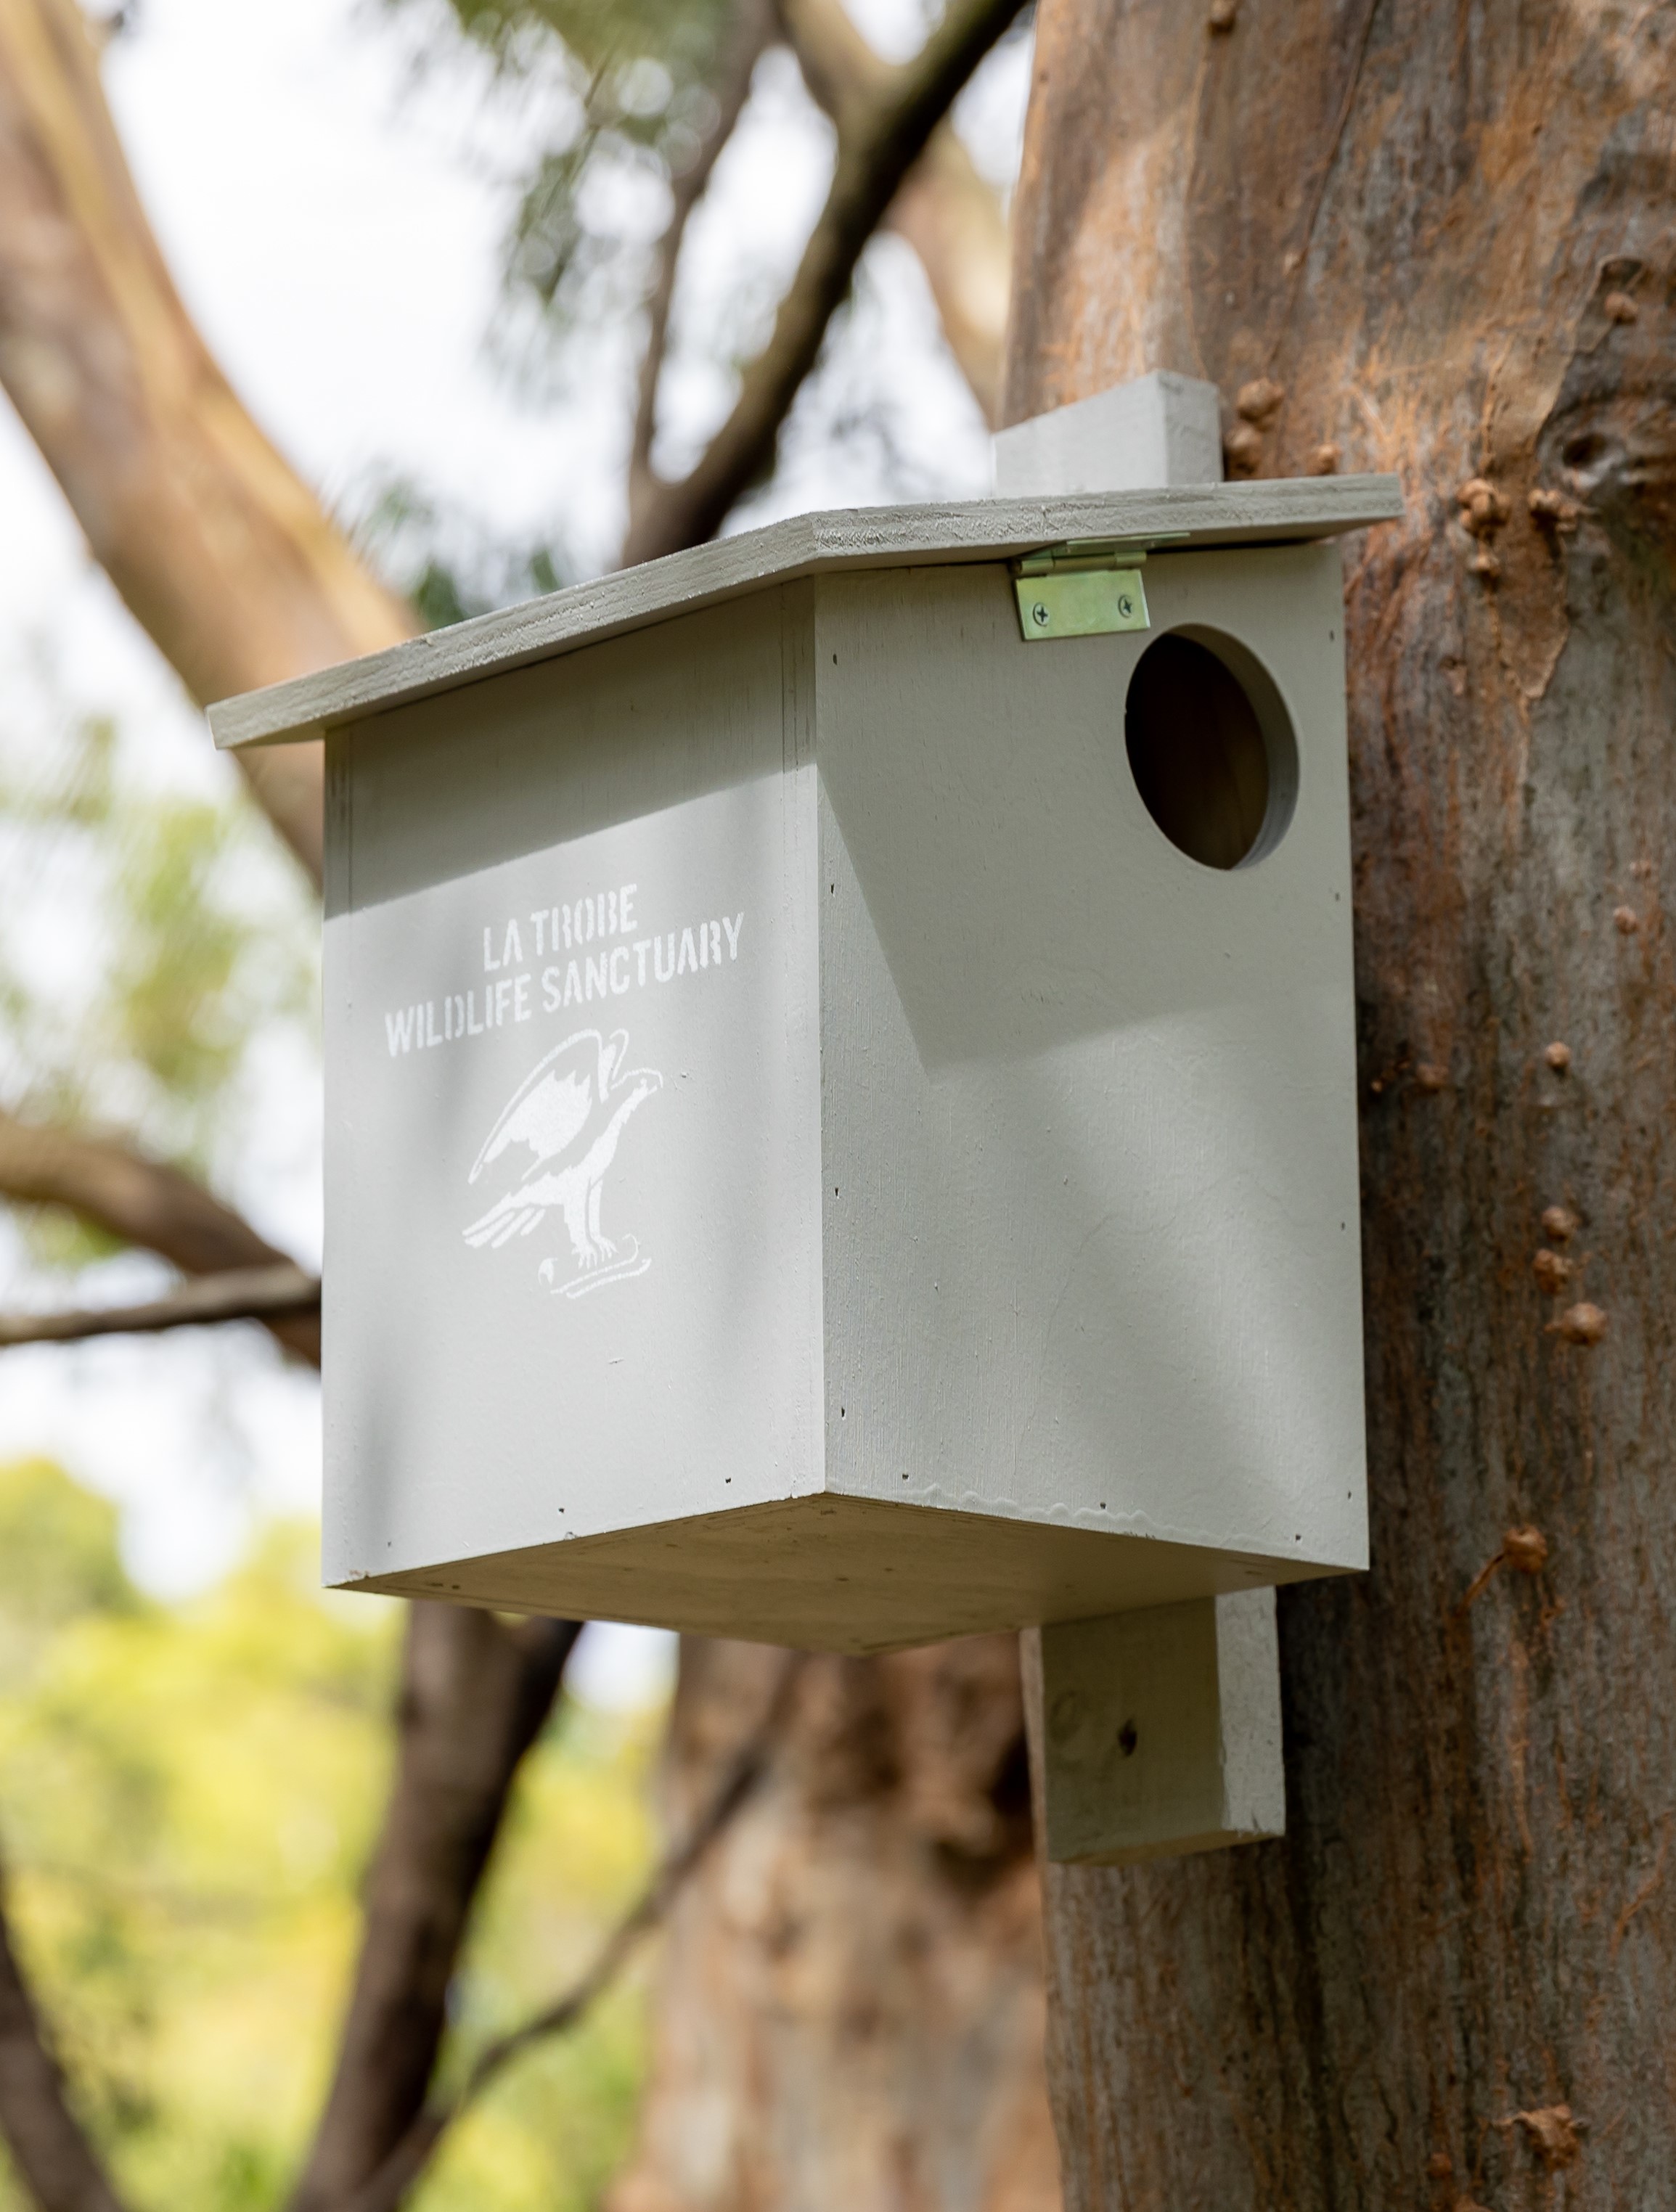 RIngtail Possum nest box